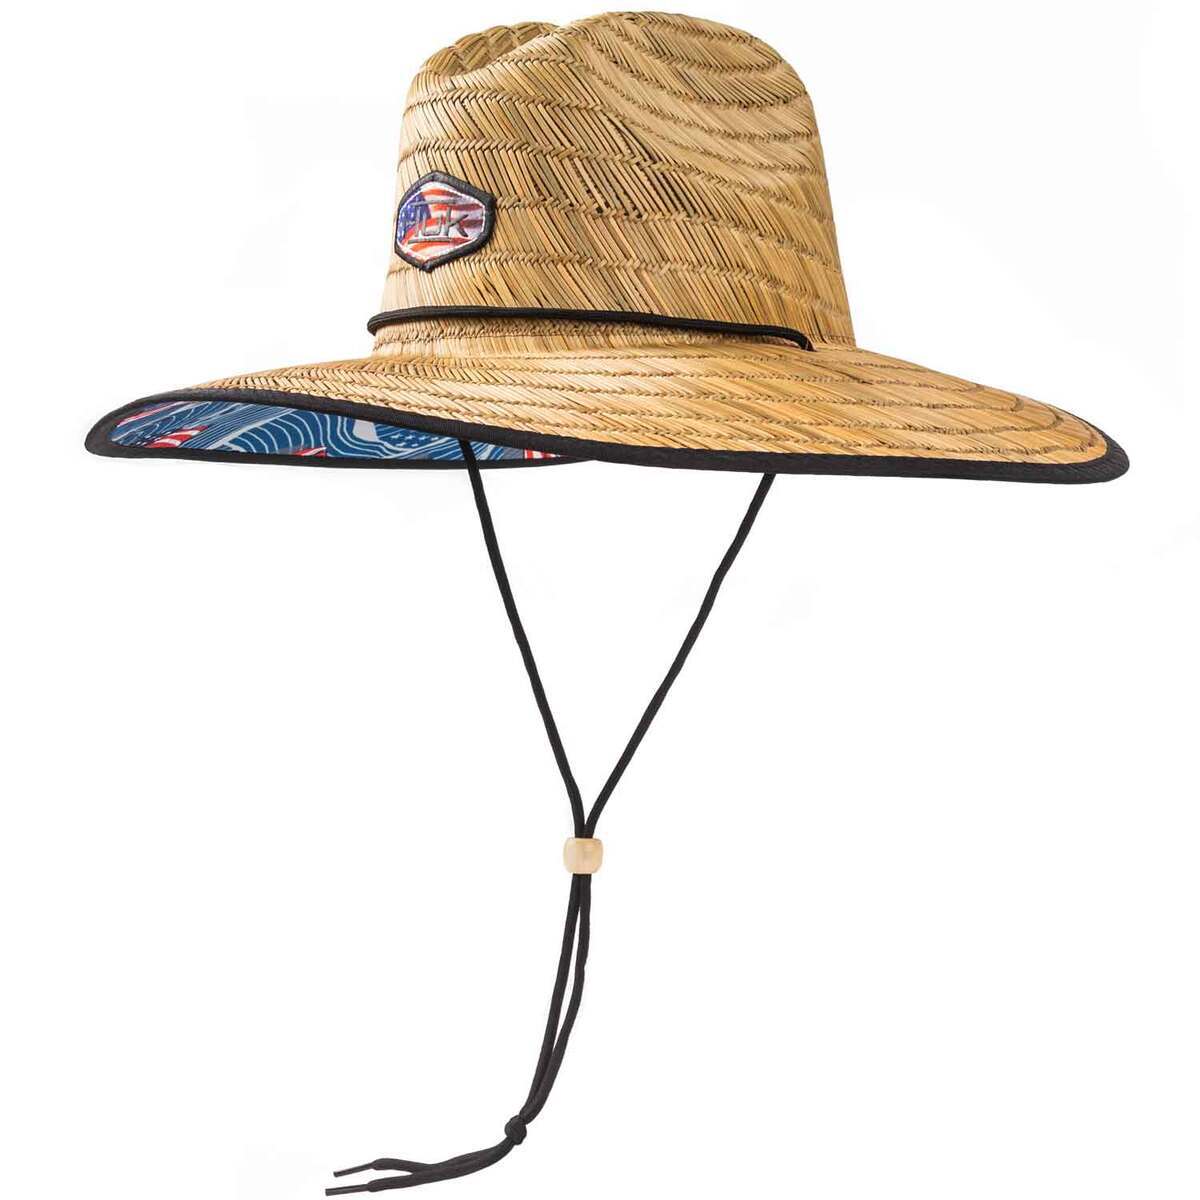 https://www.sportsmans.com/medias/huk-mens-flag-patch-straw-hat-americana-one-size-fits-most-1661523-1.jpg?context=bWFzdGVyfGltYWdlc3w3OTgwMXxpbWFnZS9qcGVnfGFHRmtMMmczWmk4eE1EazBOVEV5TkRNd01qZzNPQzh4TmpZeE5USXpMVEZmWW1GelpTMWpiMjUyWlhKemFXOXVSbTl5YldGMFh6RXlNREF0WTI5dWRtVnljMmx2YmtadmNtMWhkQXw5ZTExZjllZWZjODA4M2I1NDI0MDFkMjNiMjNmOThmOTIxNTkxYzMxNmYyNWM0ZDE2ZjYzM2Y2YTk2ODkzYWNj